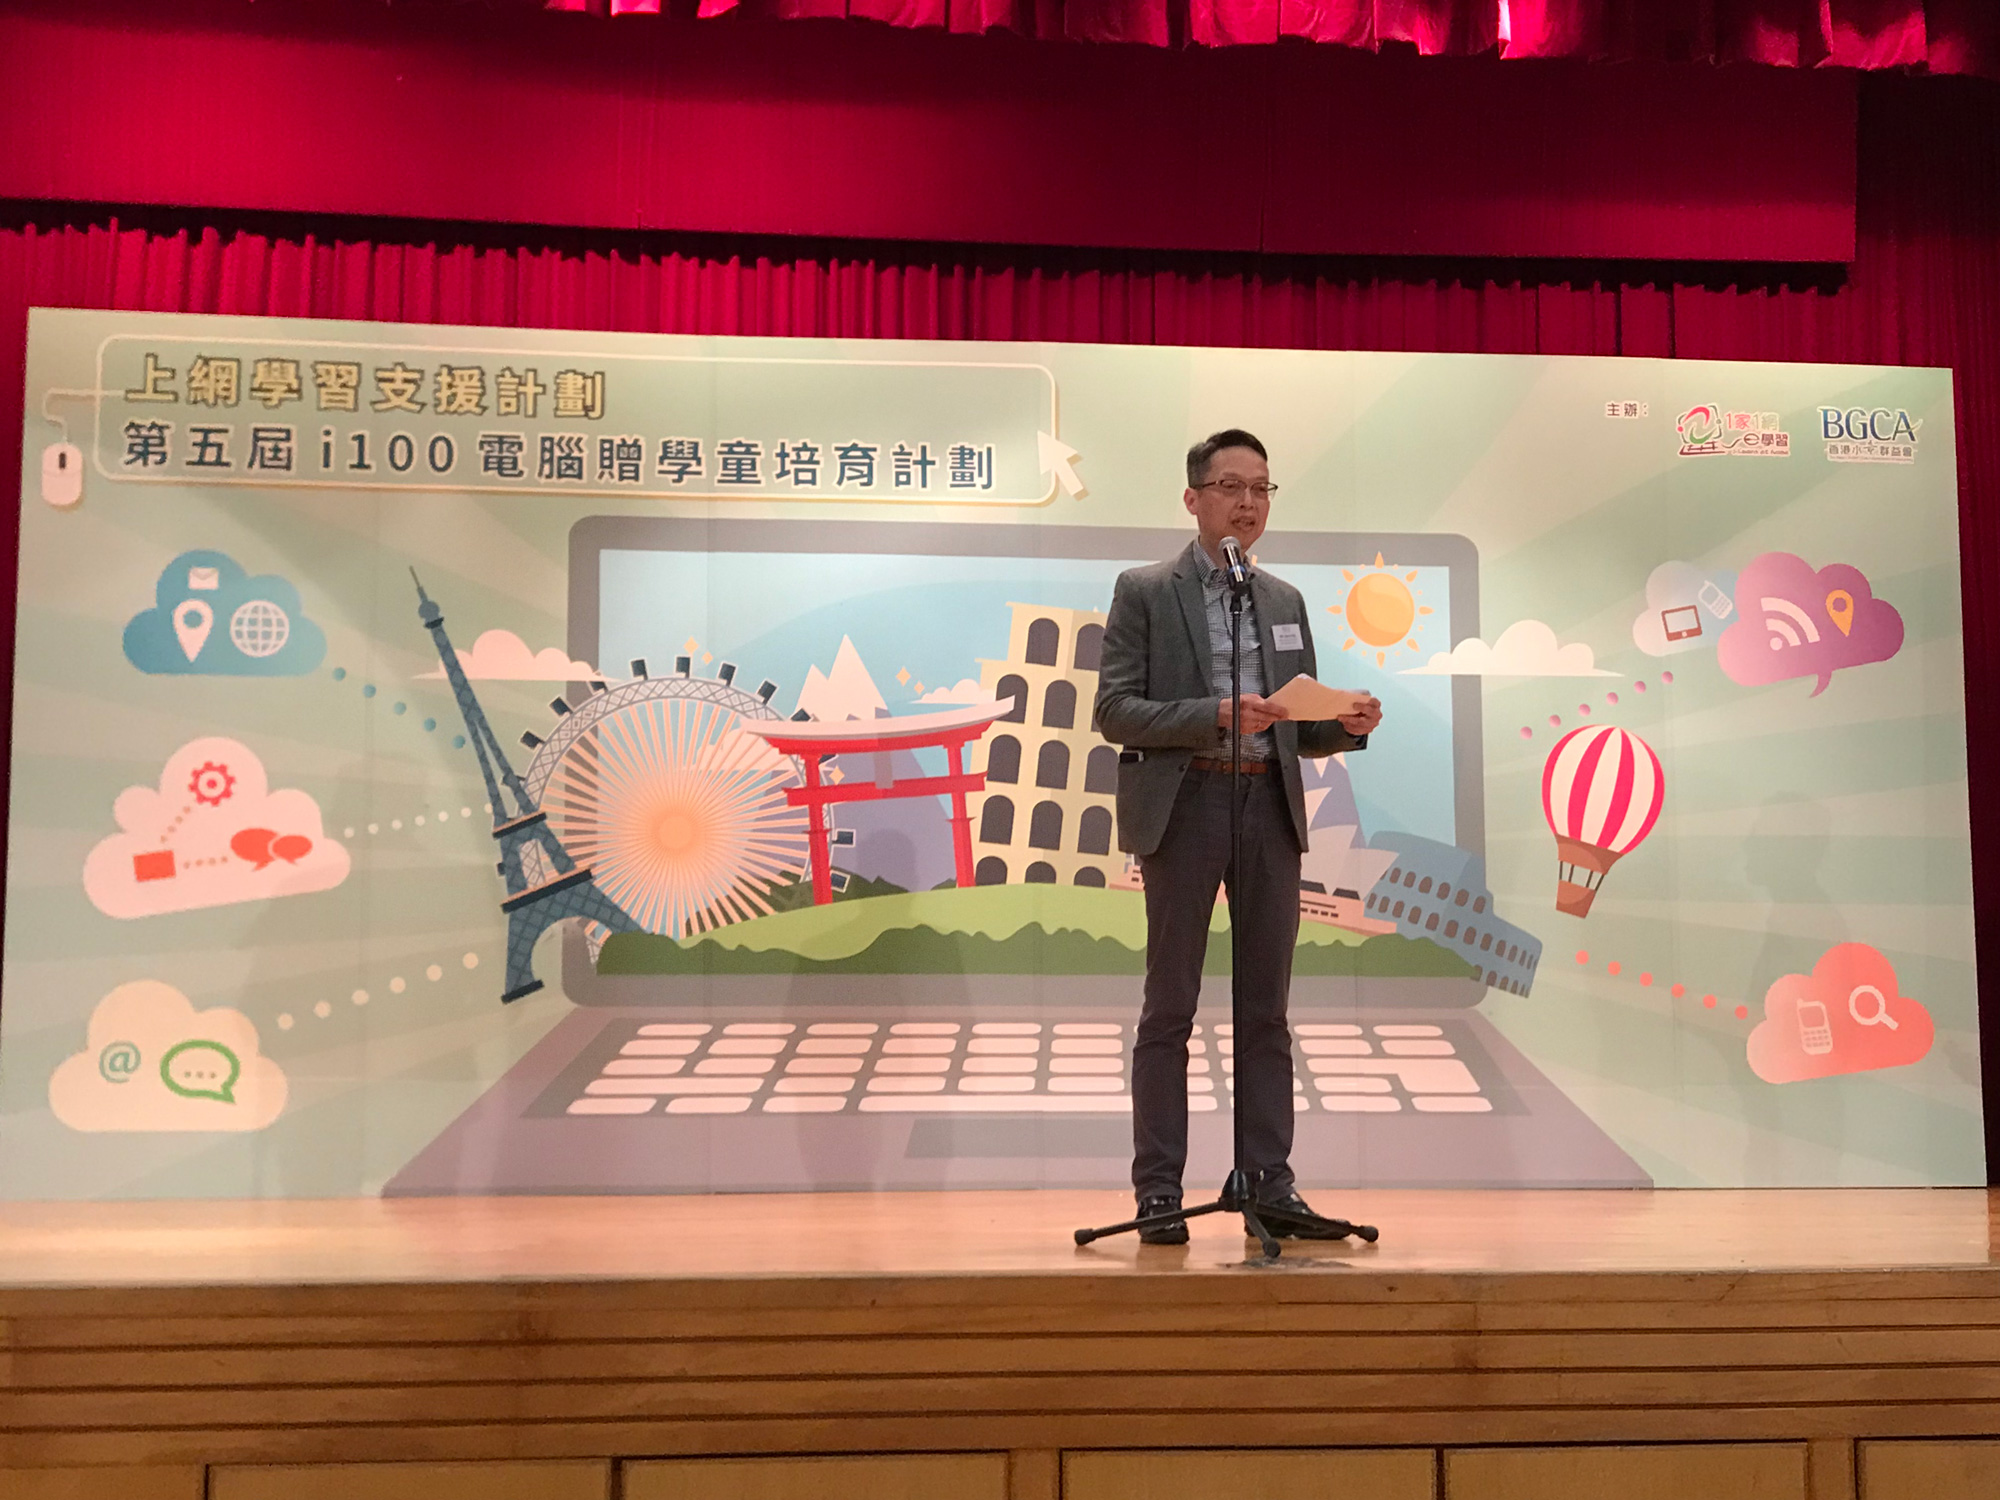 总系统经理（数码共融）吴国豪先生于「第五届i100电脑赠学童培育计划启动暨电脑送赠仪式」致勉励辞。